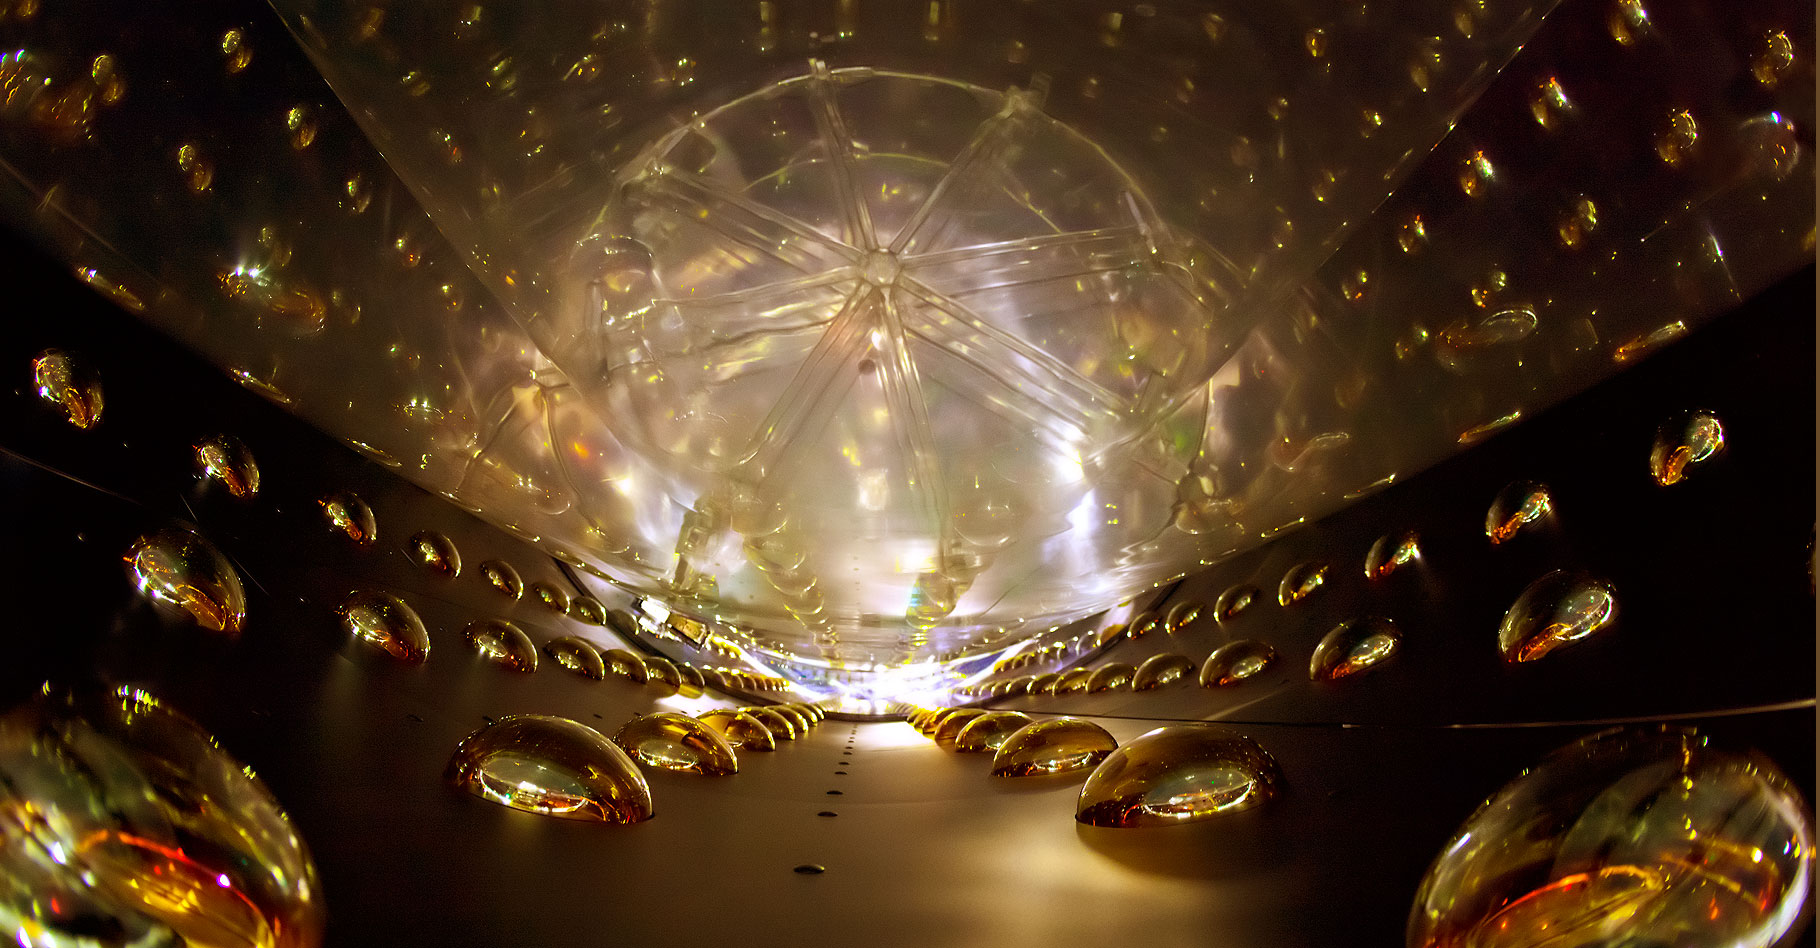 Tout savoir sur les neutrinos. © Roy Kaltschmidt, Lawrence Berkeley National Laboratory - Domaine public